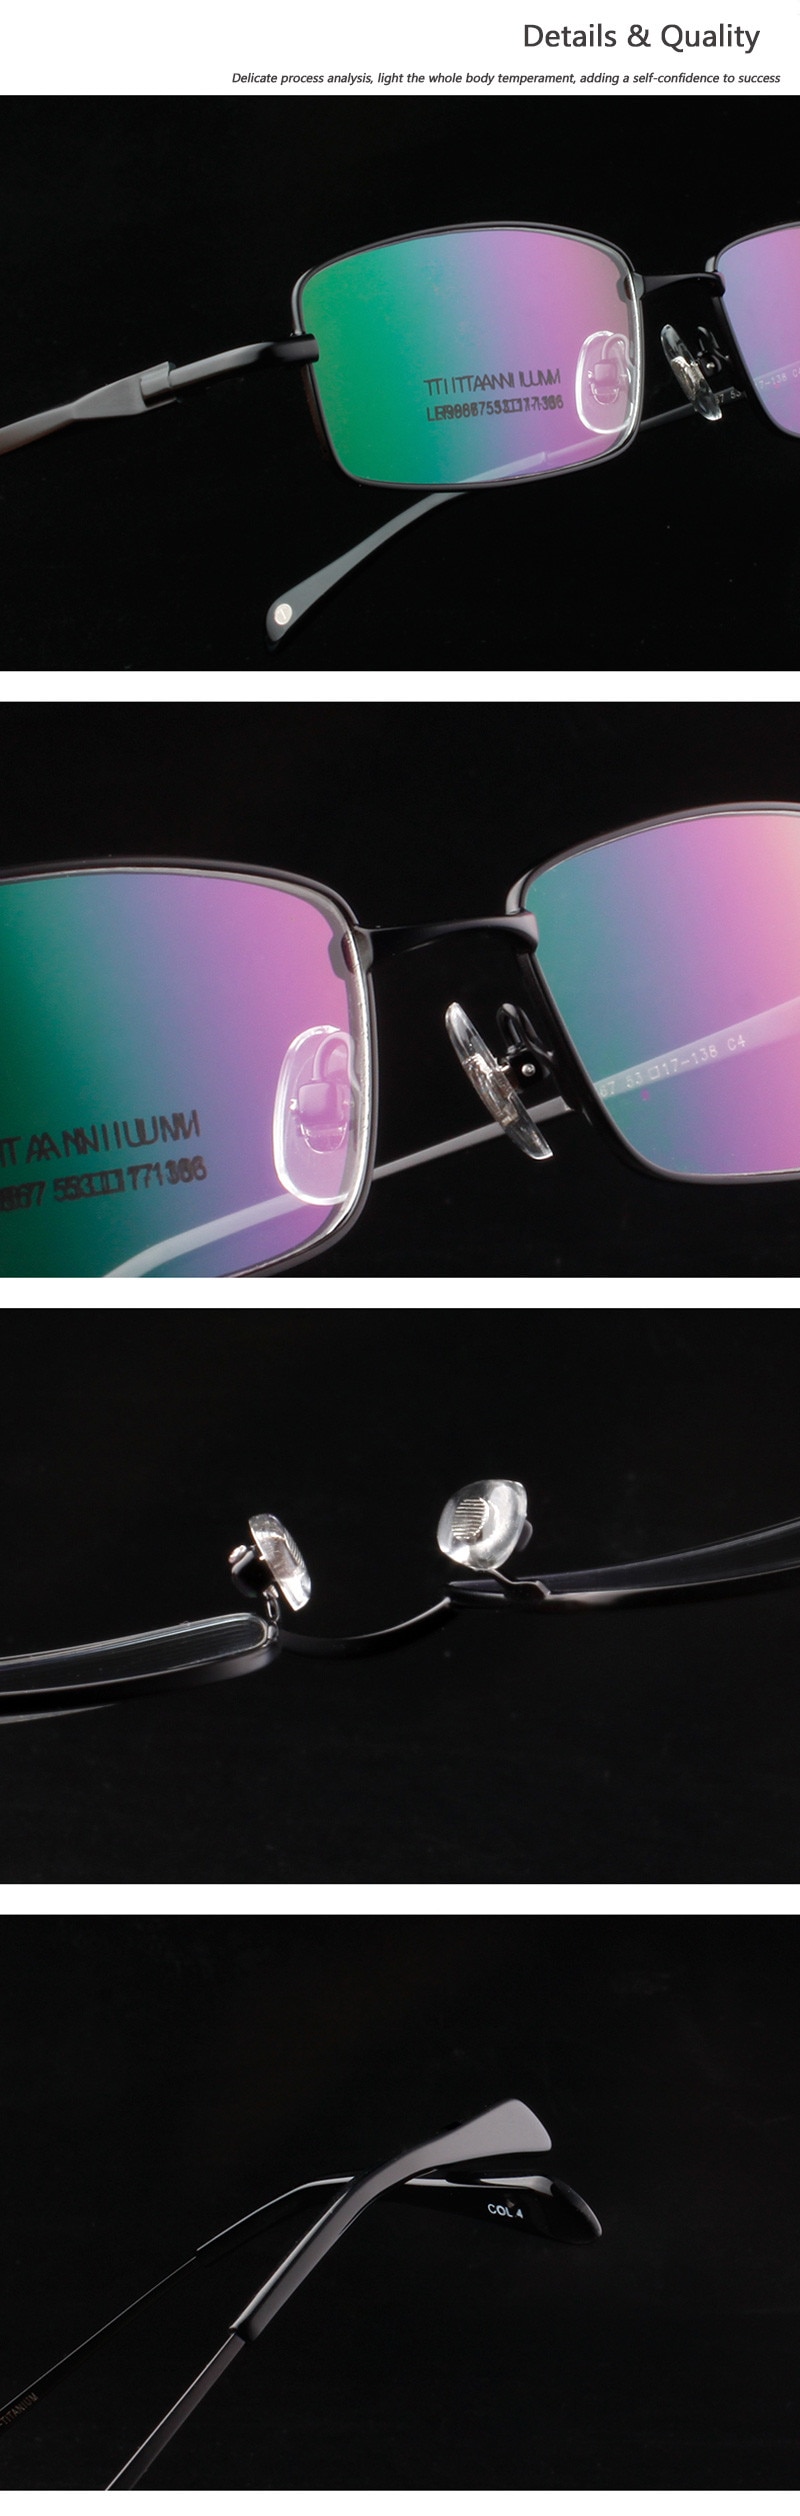 Handoer-Men-Eyeglasses-Frame-Pure-Titanium-Optical-Glasses-Prescription-Spectacles-Full-Rim-Eyewear--32971371935